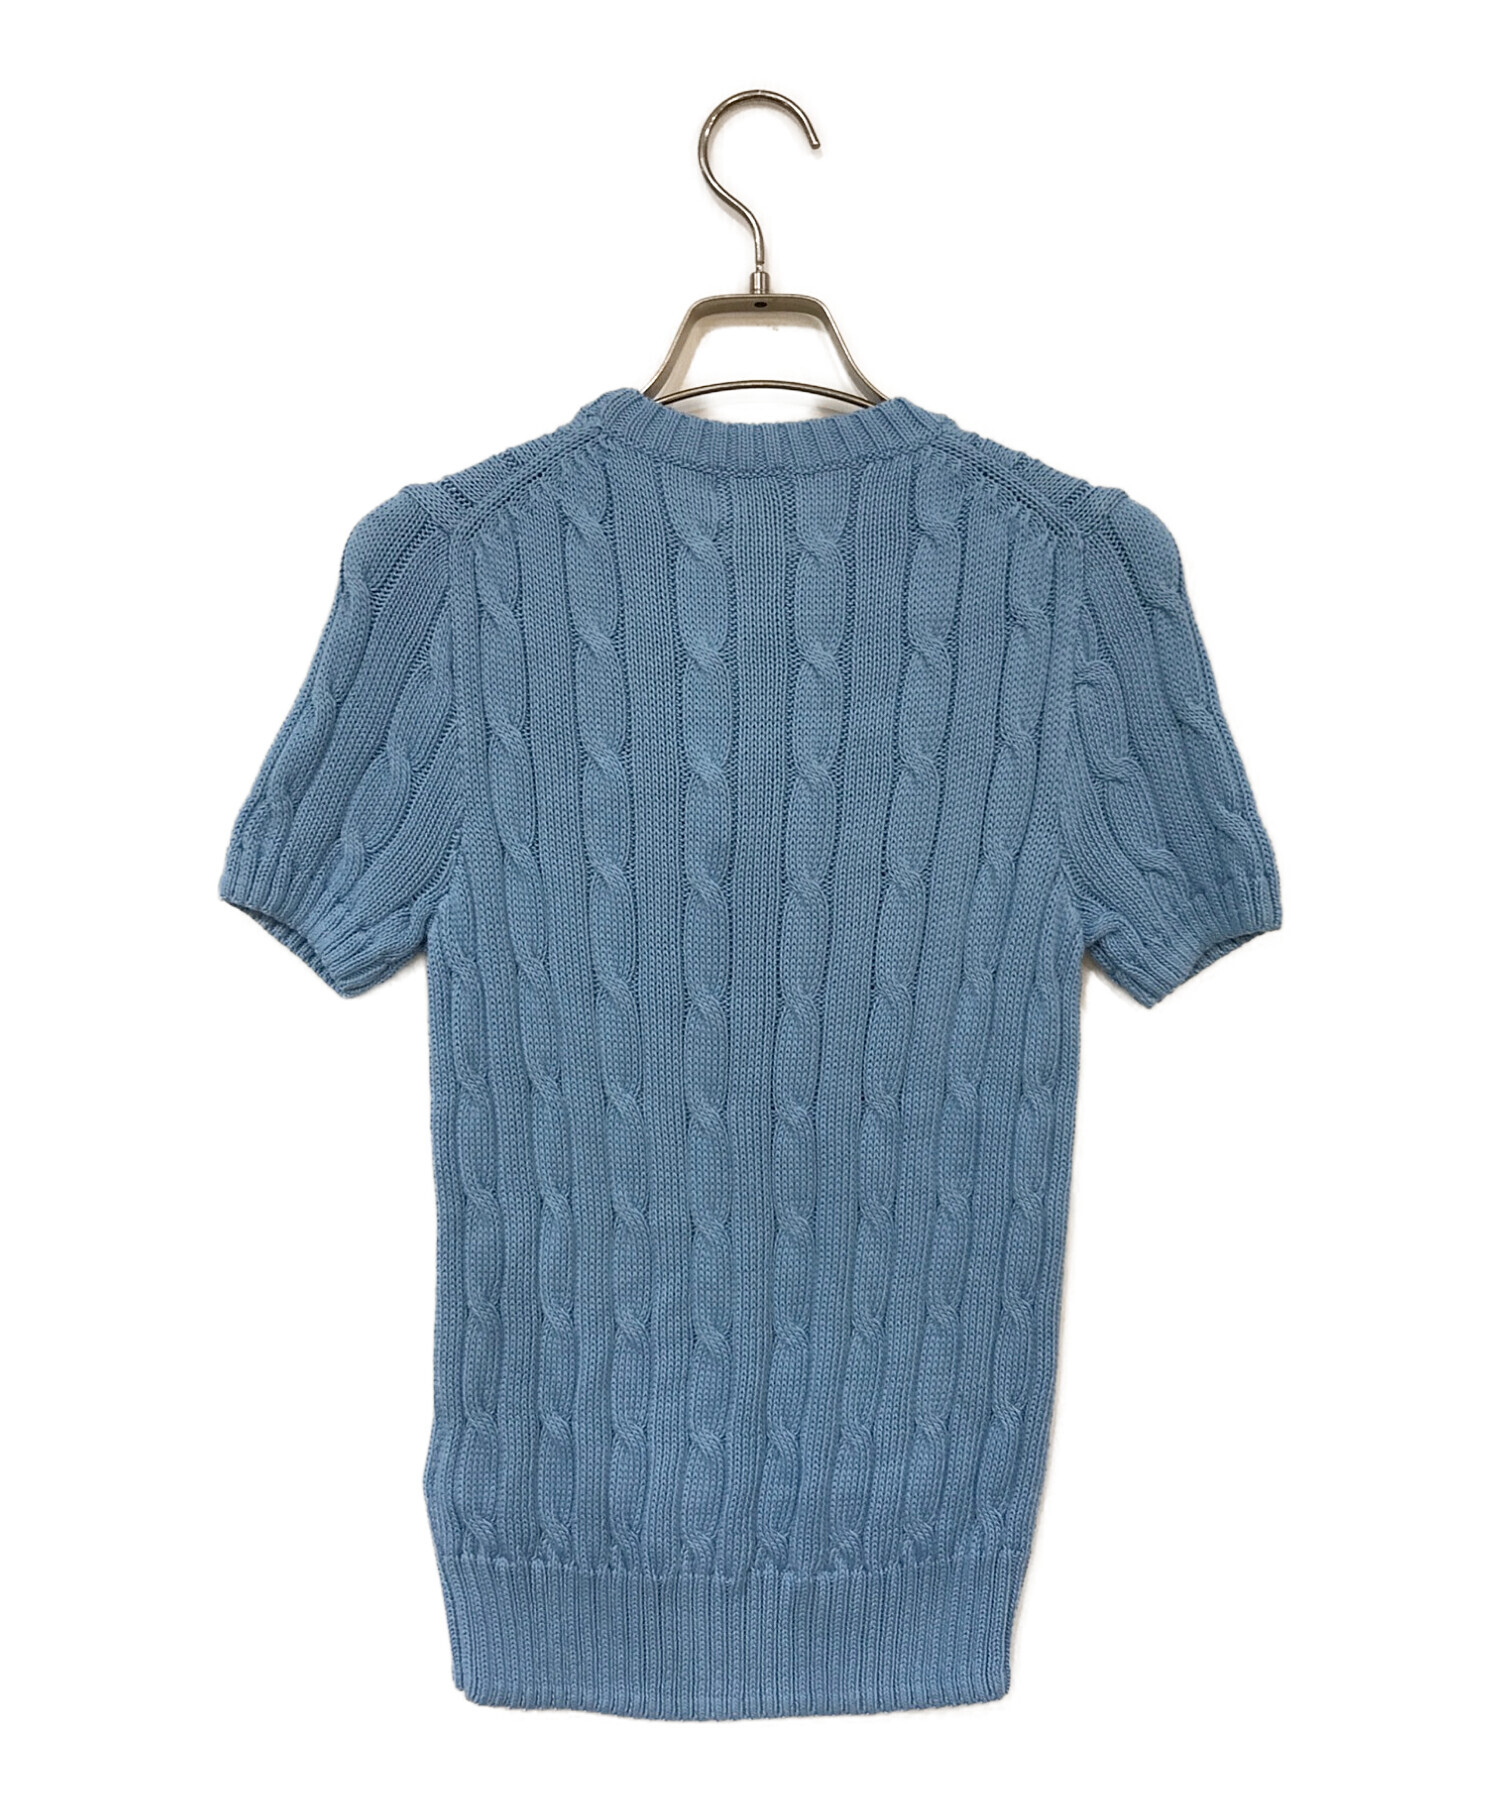 POLO RALPH LAUREN (ポロ・ラルフローレン) 半袖ケーブルニット セーター ブルー サイズ:S